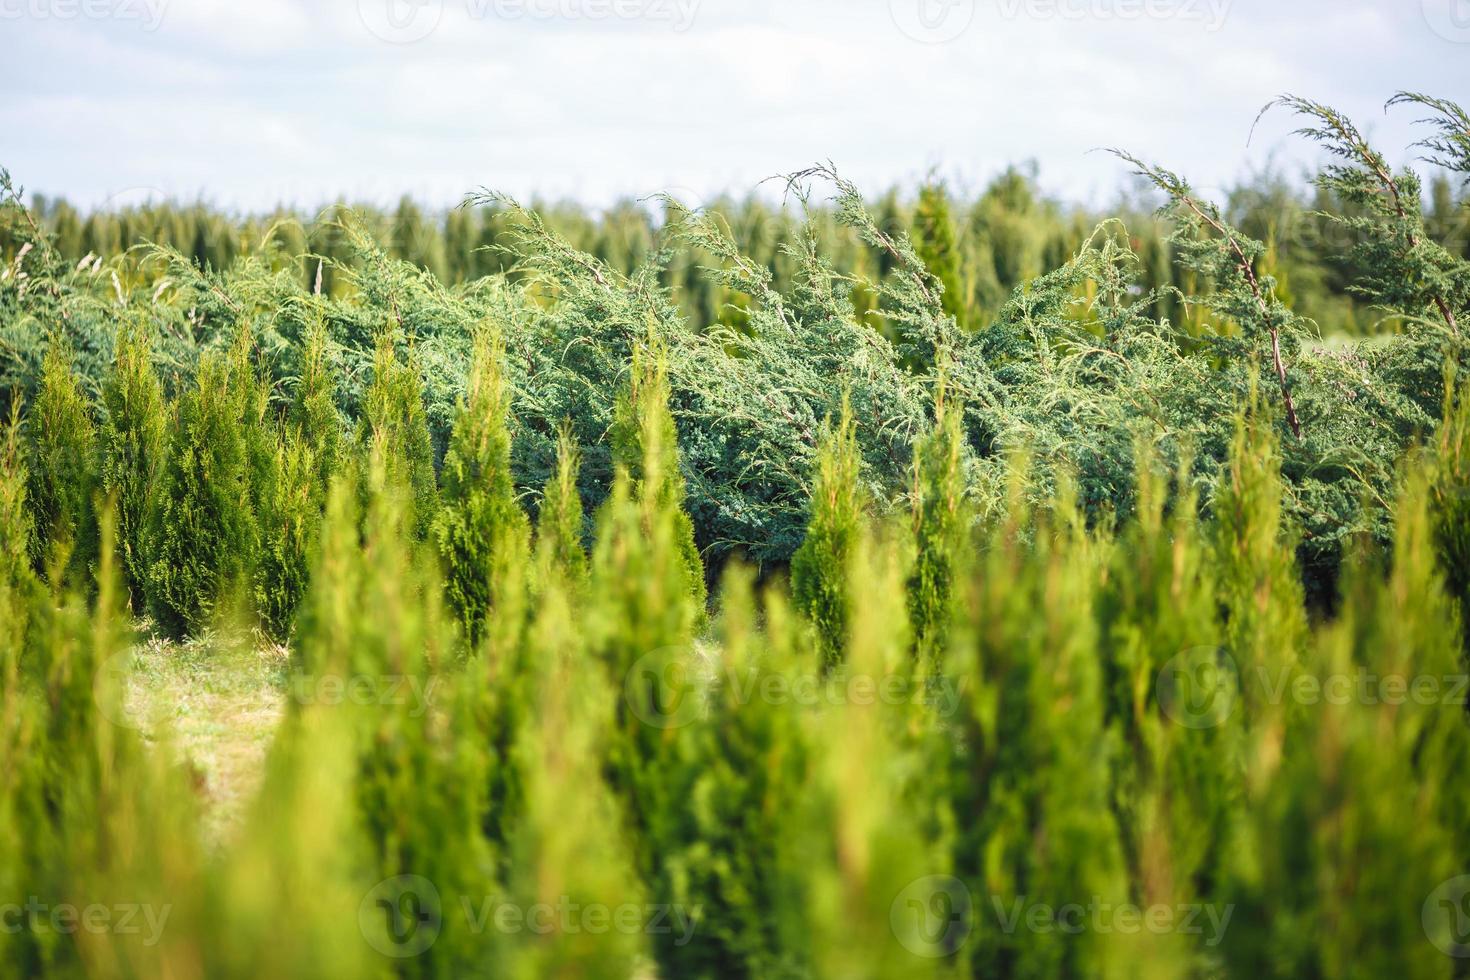 filari di giovani conifere in serra con molte piante in piantagione foto